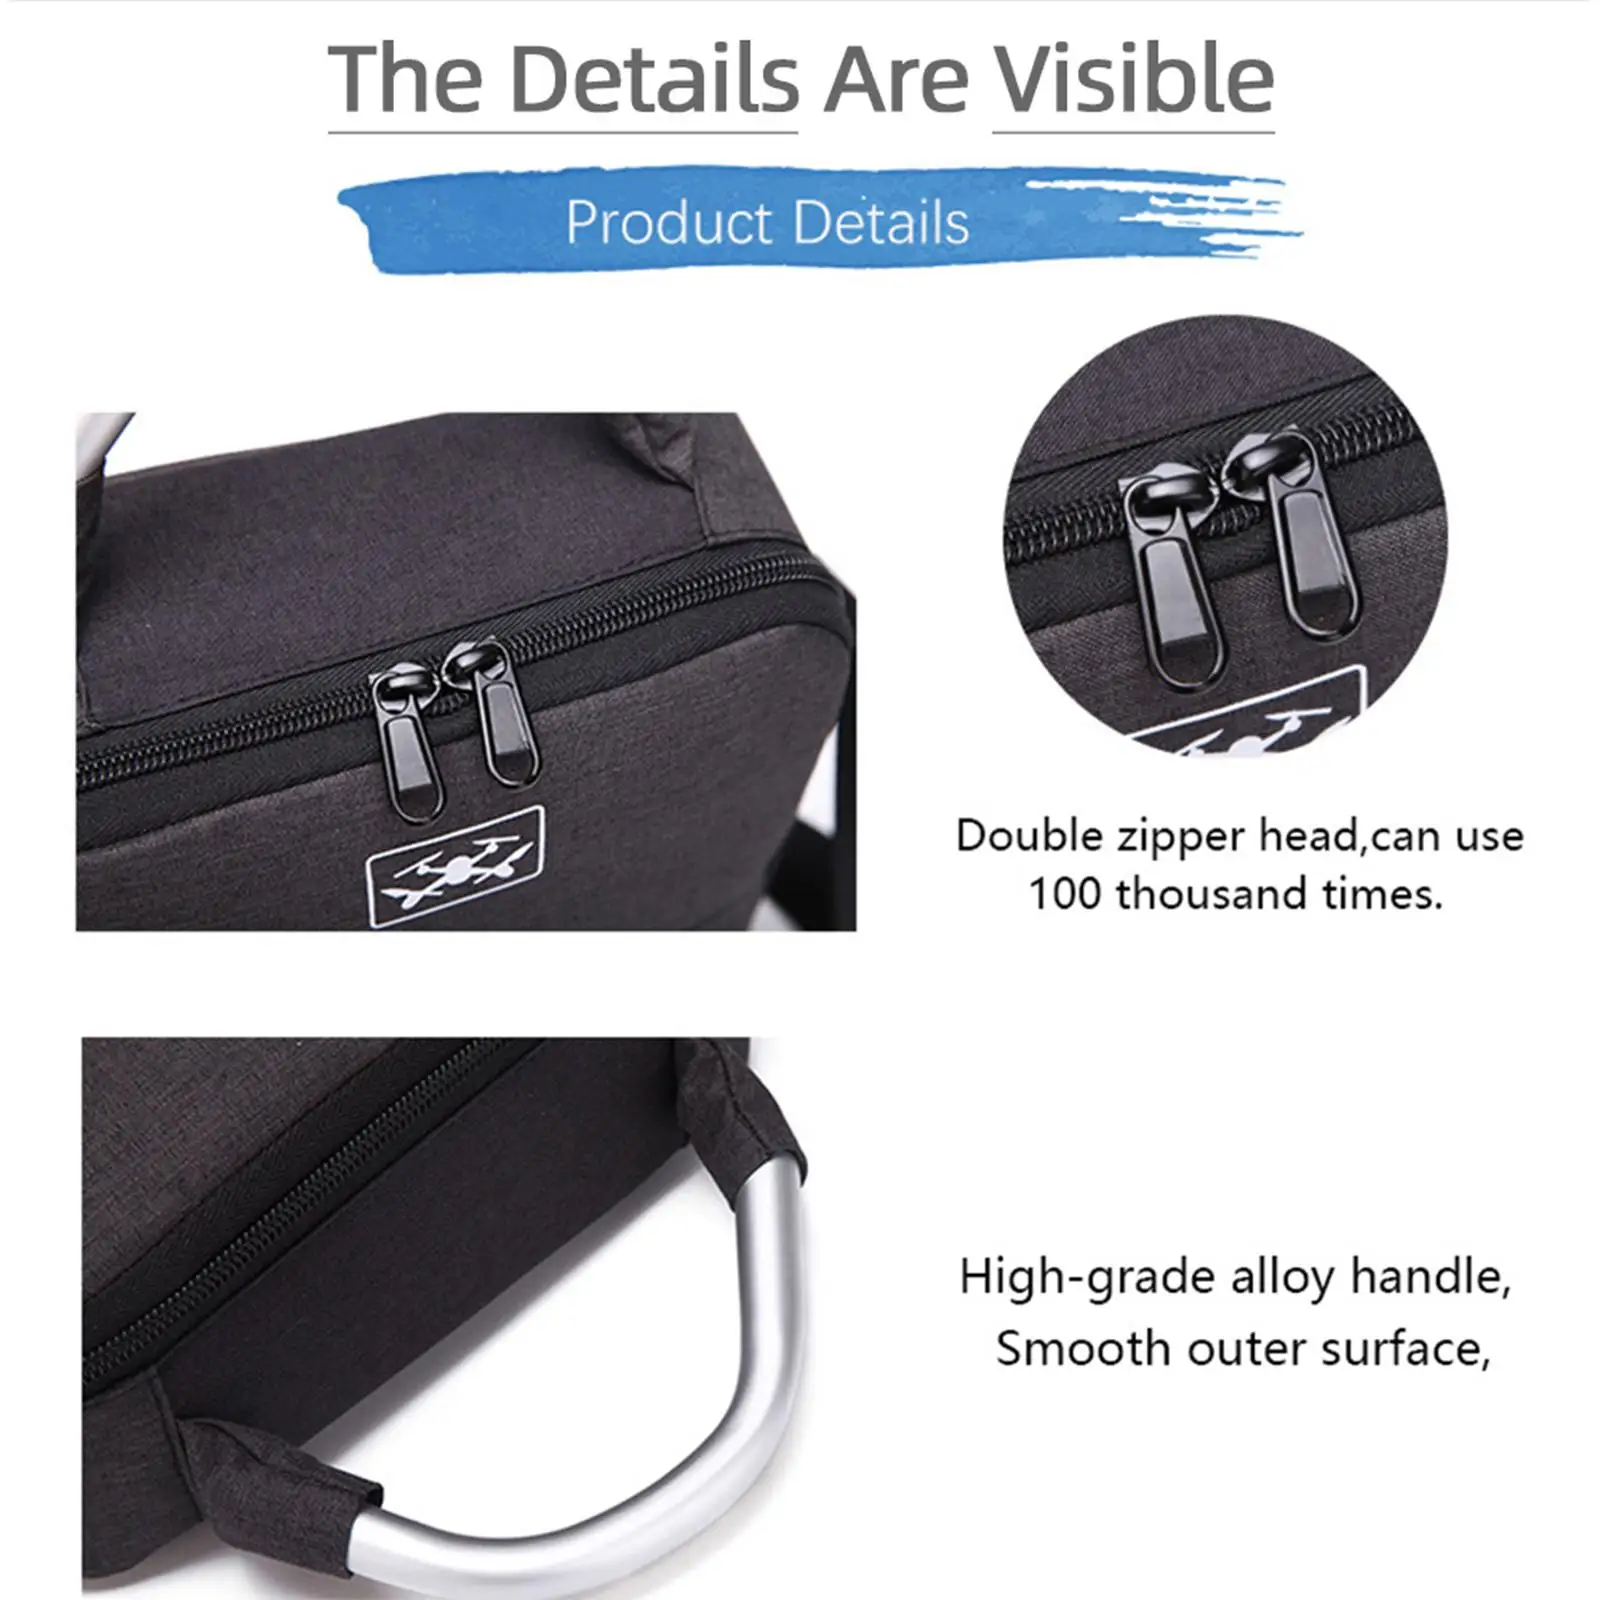 Portable Carrying Bag Large Handbag Oxford Protection Case Storage Case Shoulder Bag for DJI Mini 3 Pro Remote Controller Travel